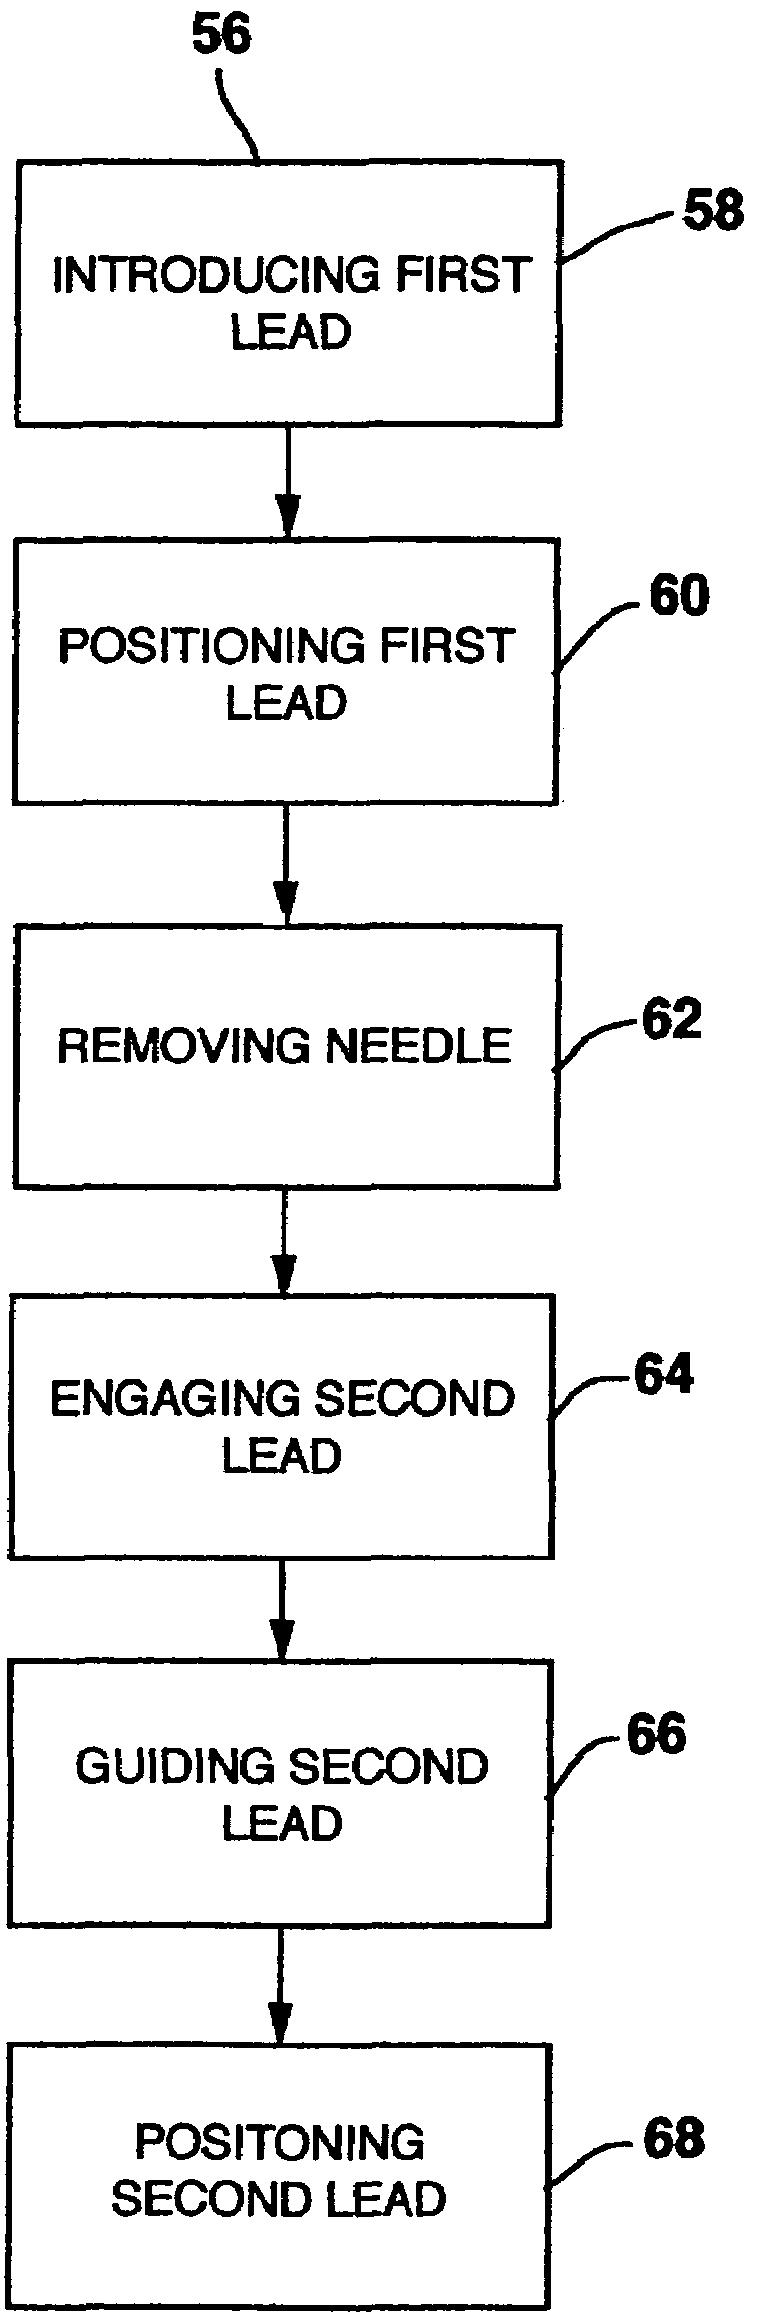 Method of use of implantable percutaneous stimulation lead